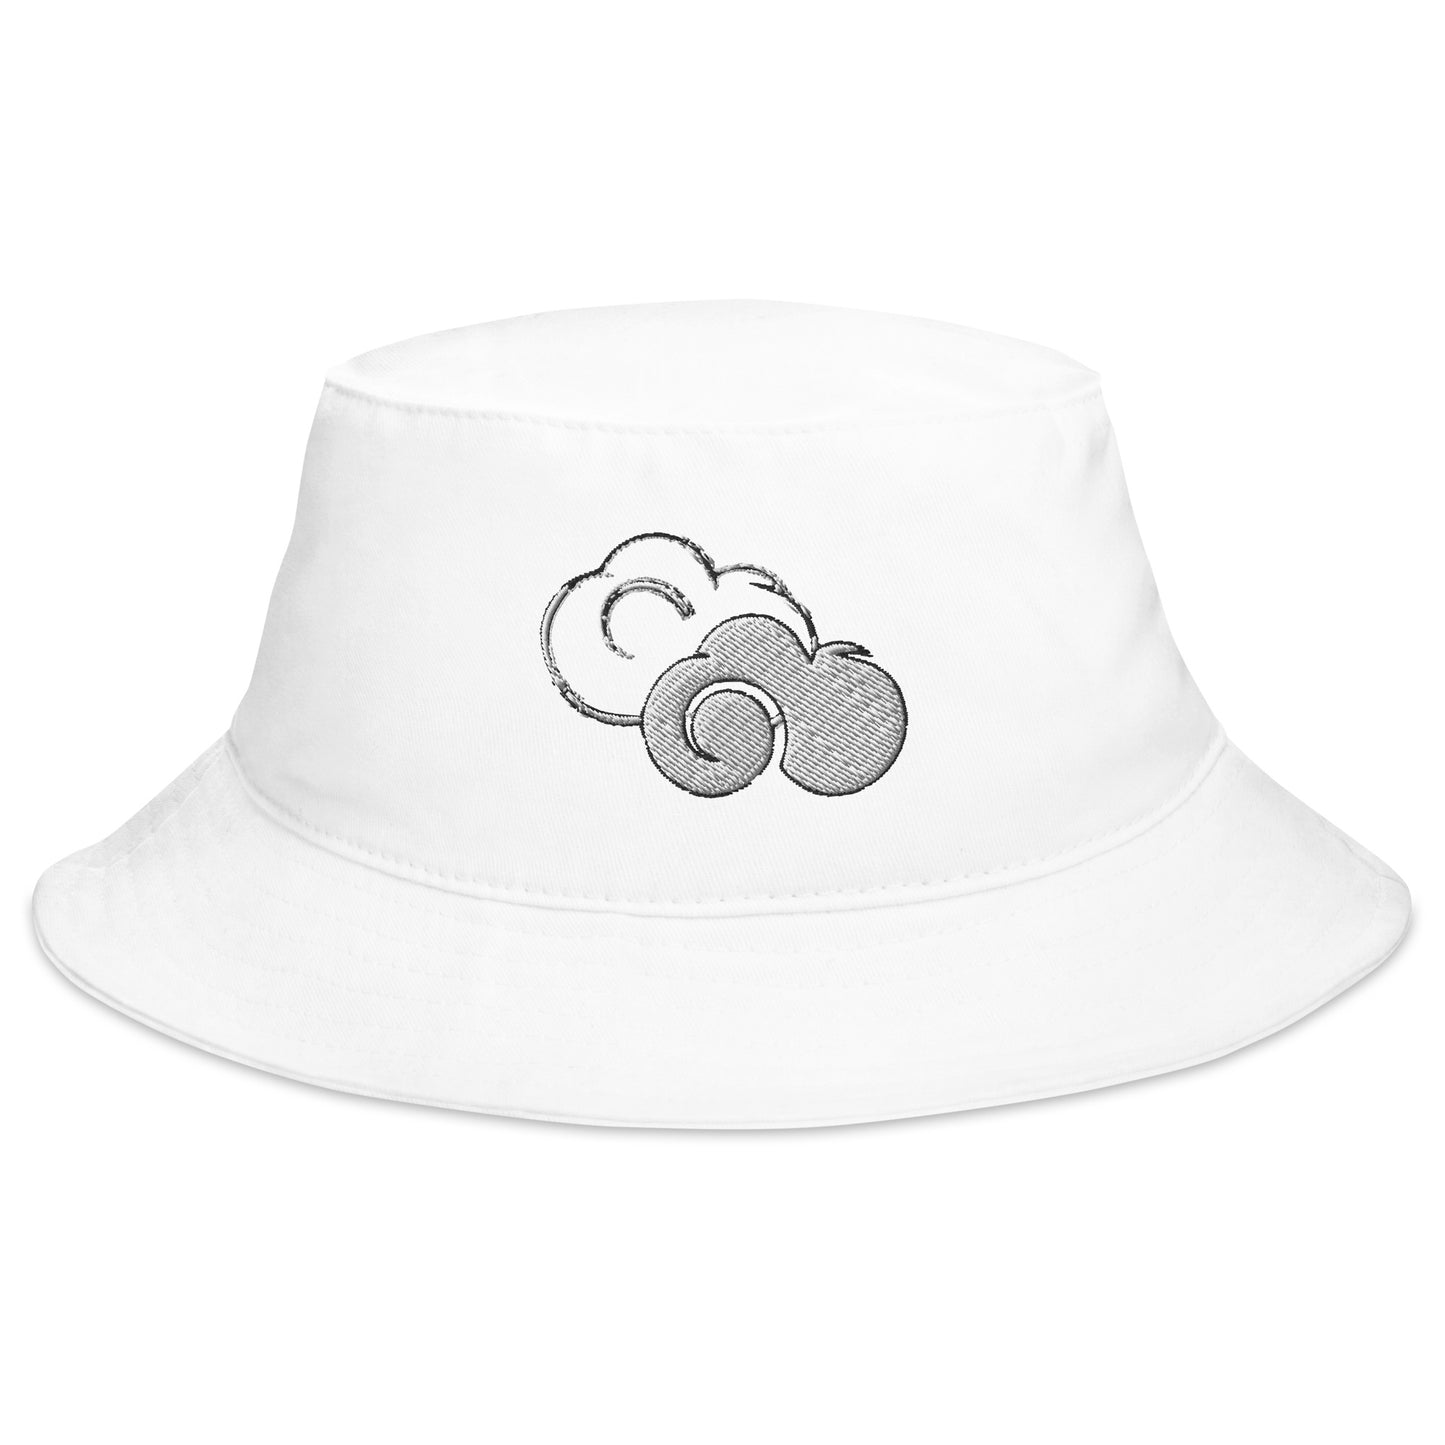 Our Zen Clouds Bucket Hat